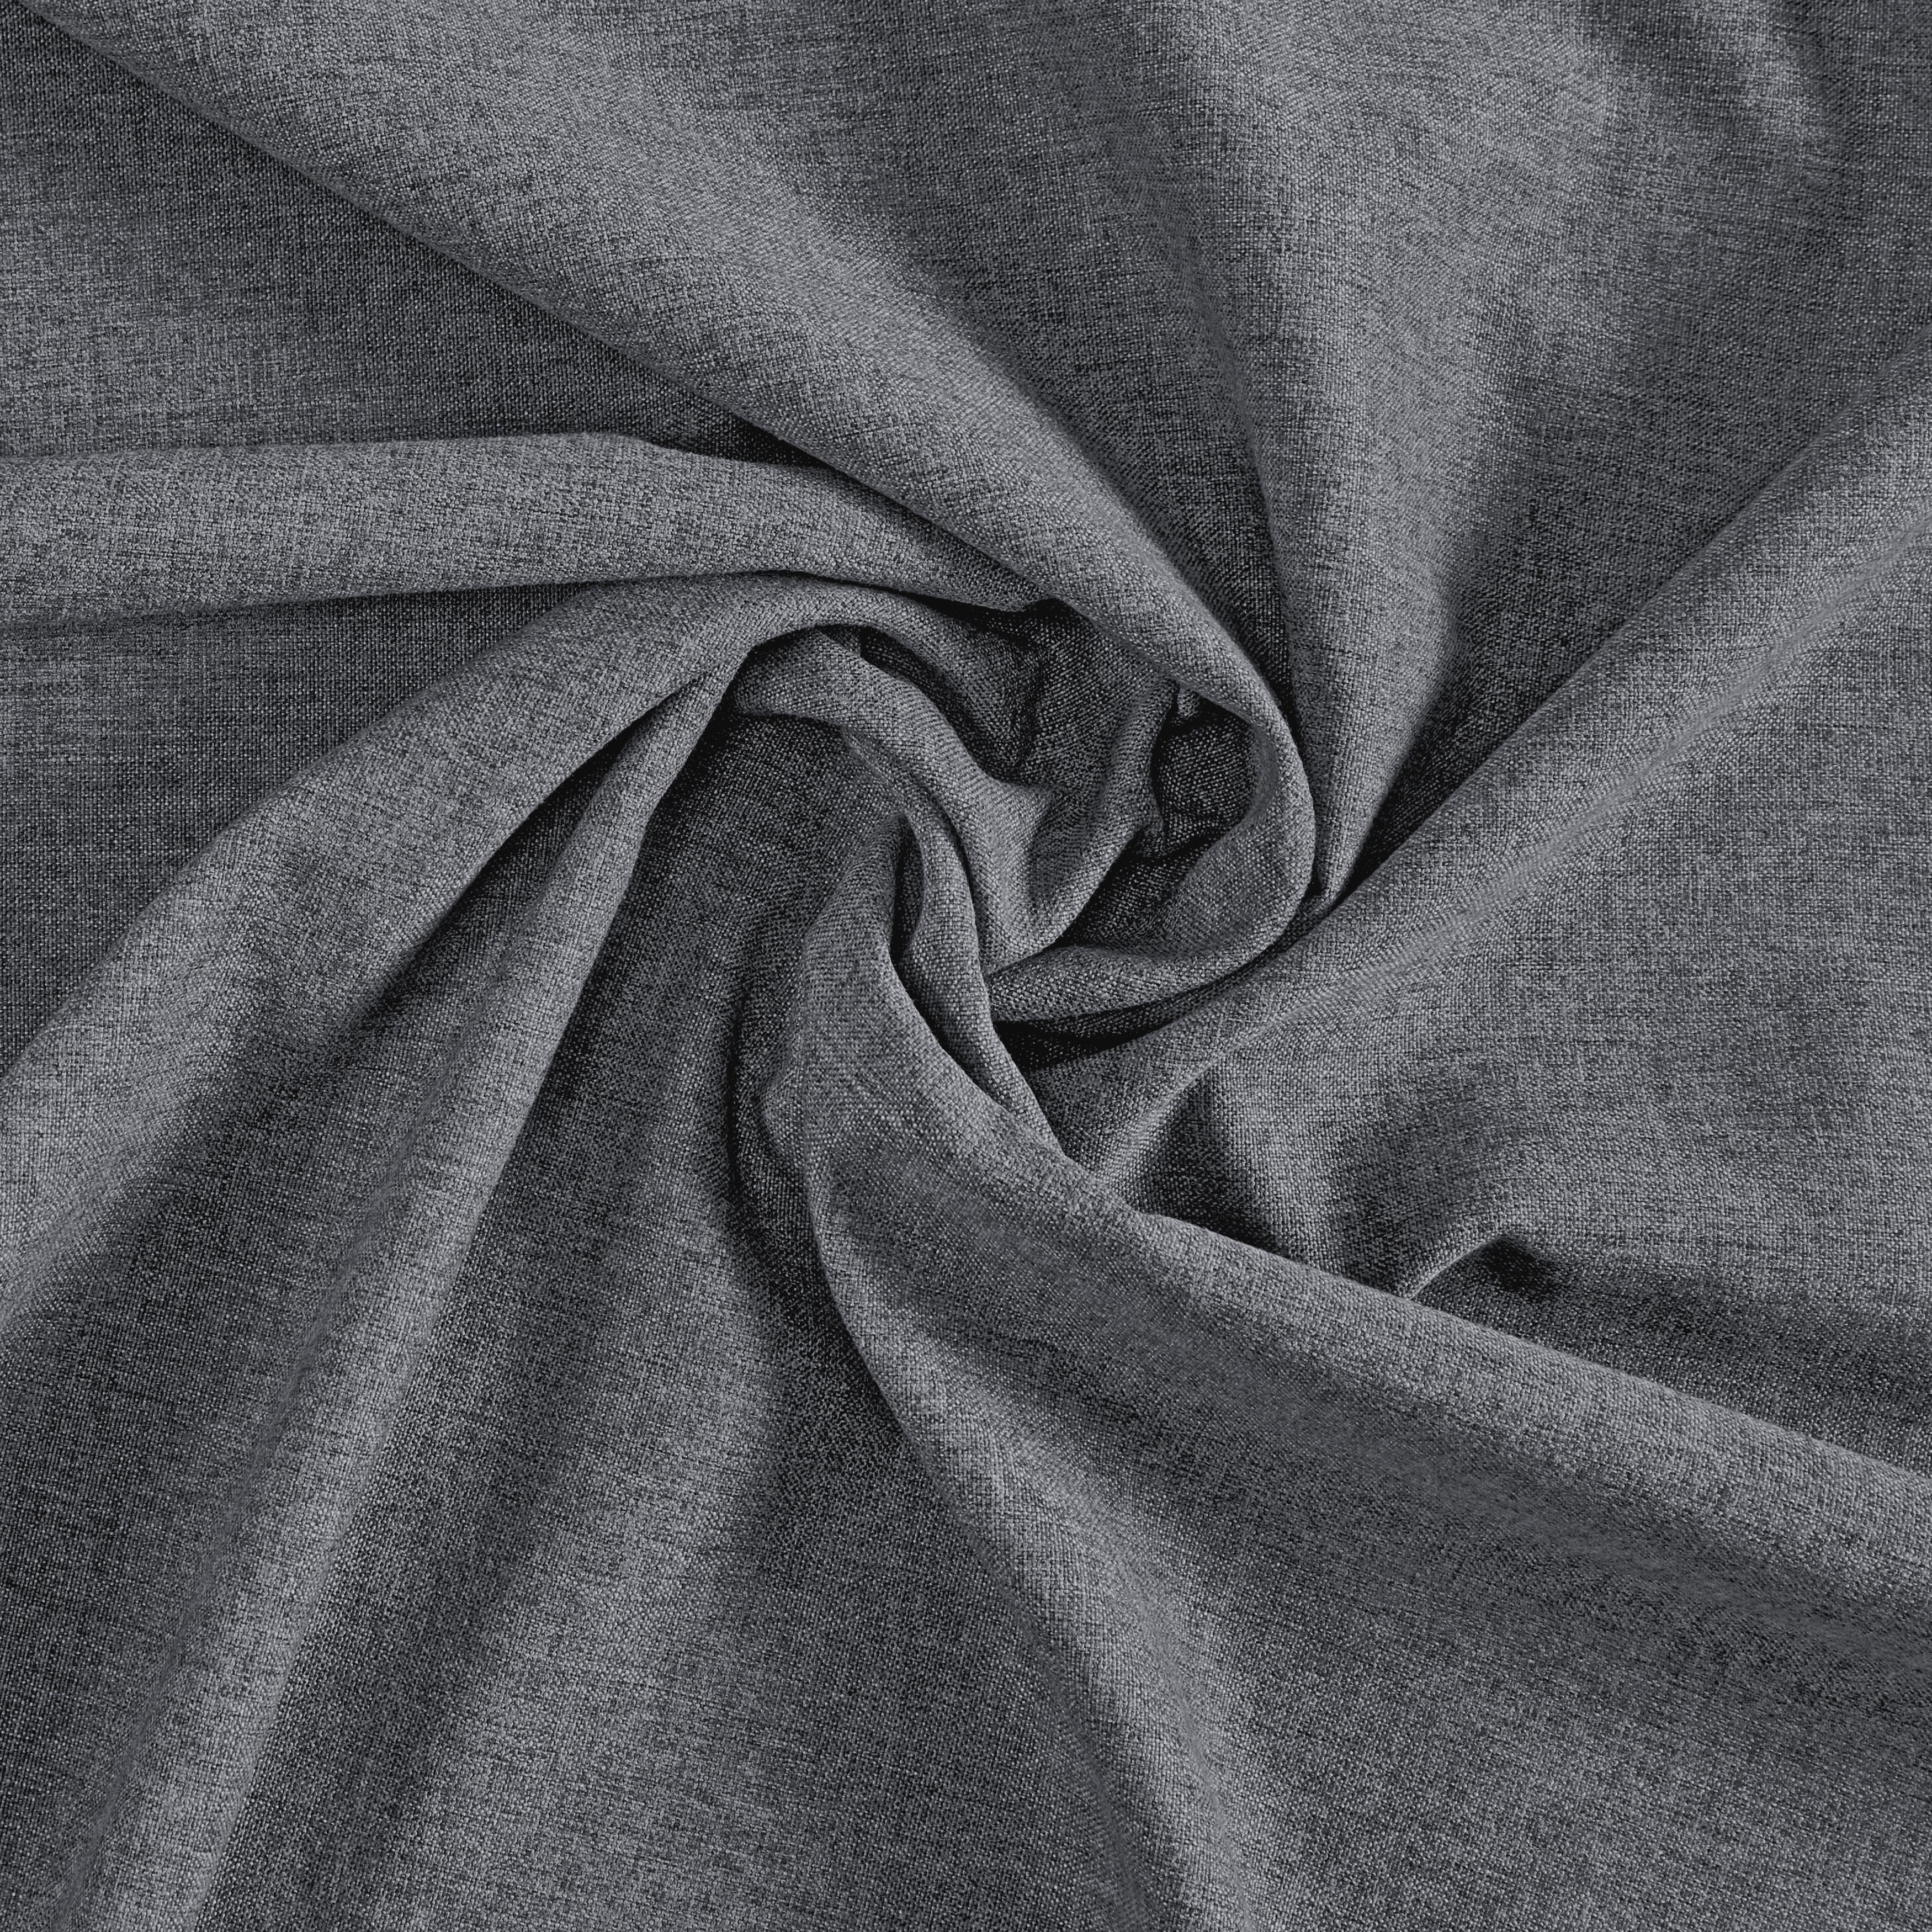 Končana Zavesa Ulrich - antracit, tekstil (135/245cm) - Modern Living